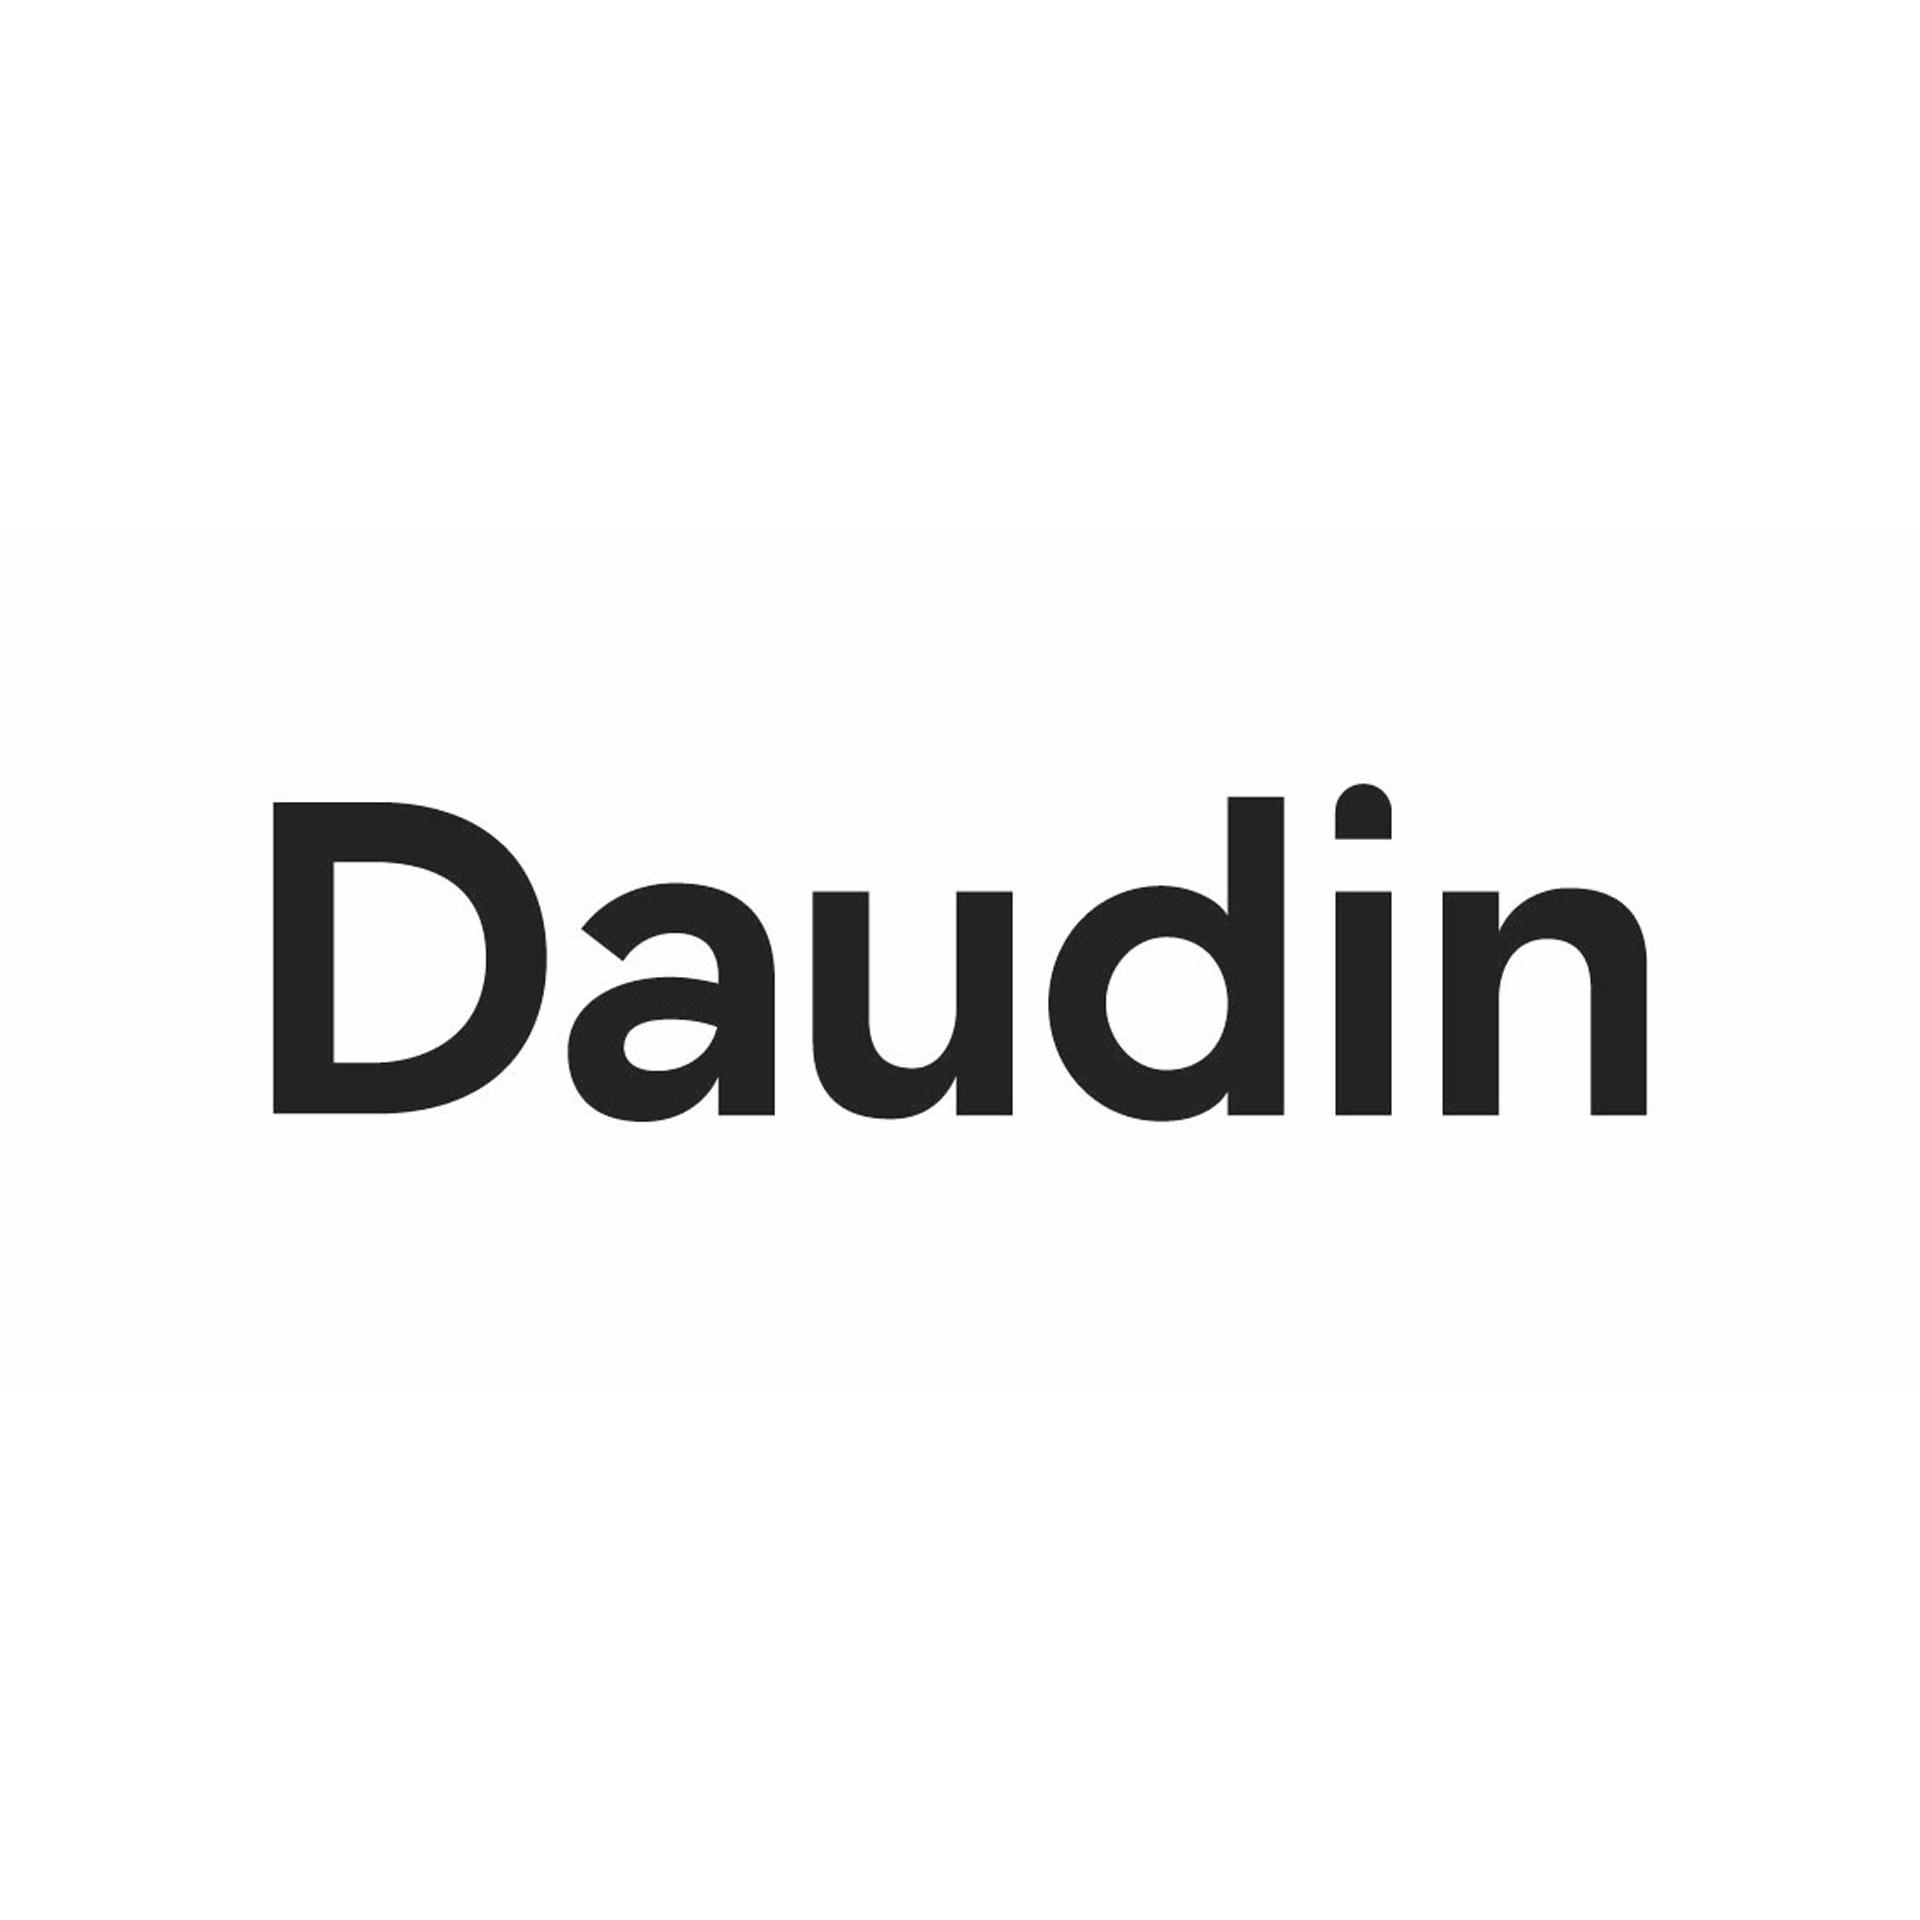 Daudin Logo